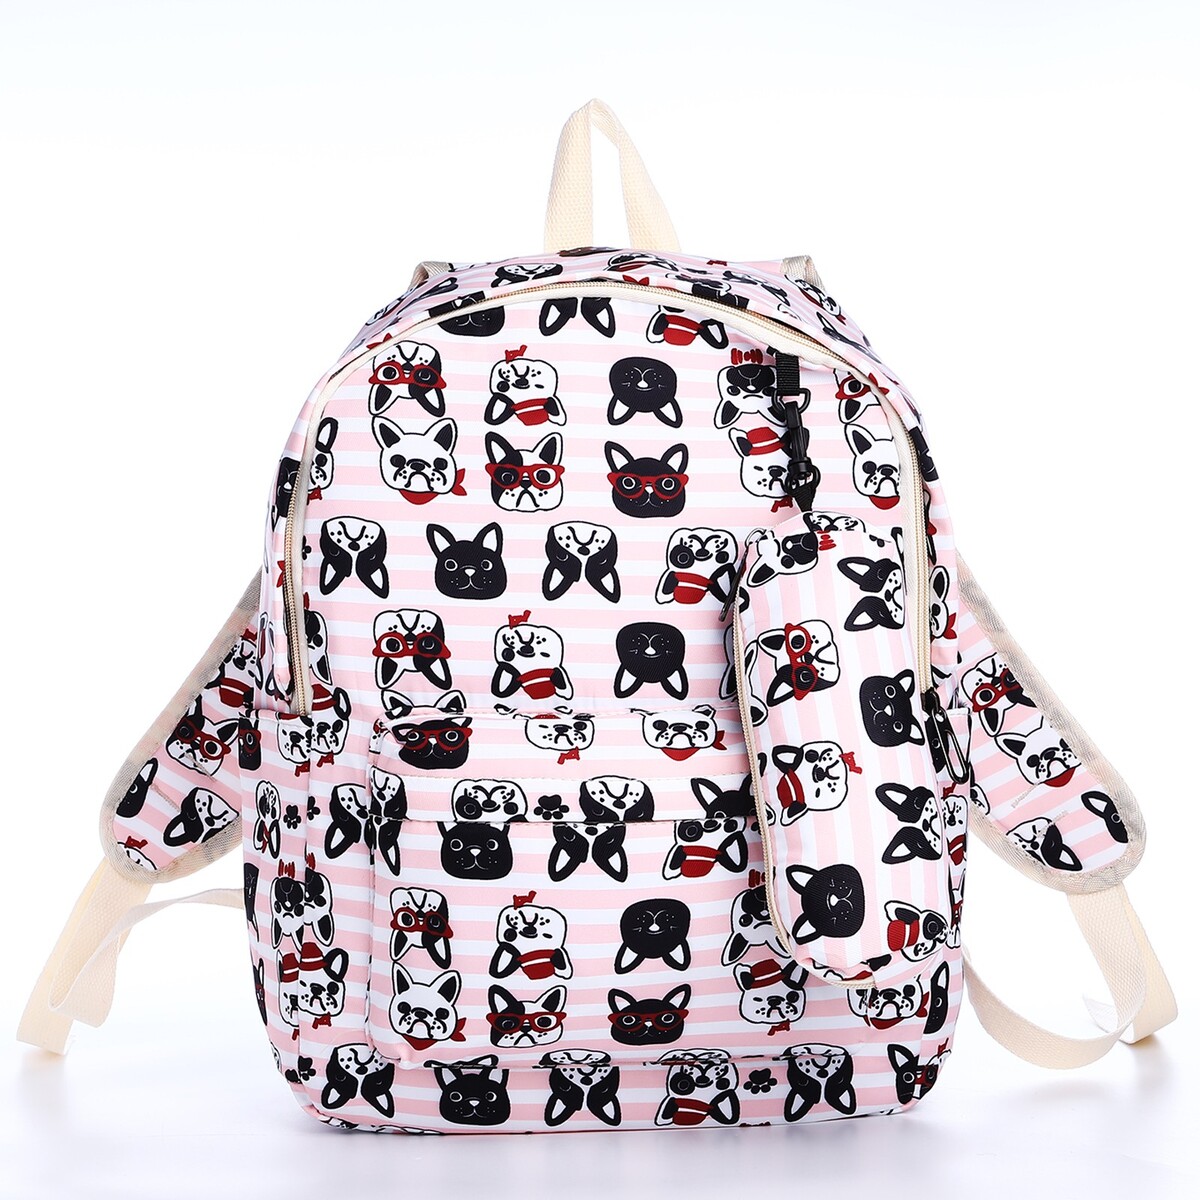 Рюкзак школьный из текстиля на молнии, 3 кармана, пенал, цвет розовый рюкзак школьный из текстиля на молнии 3 кармана пенал белый разно ный